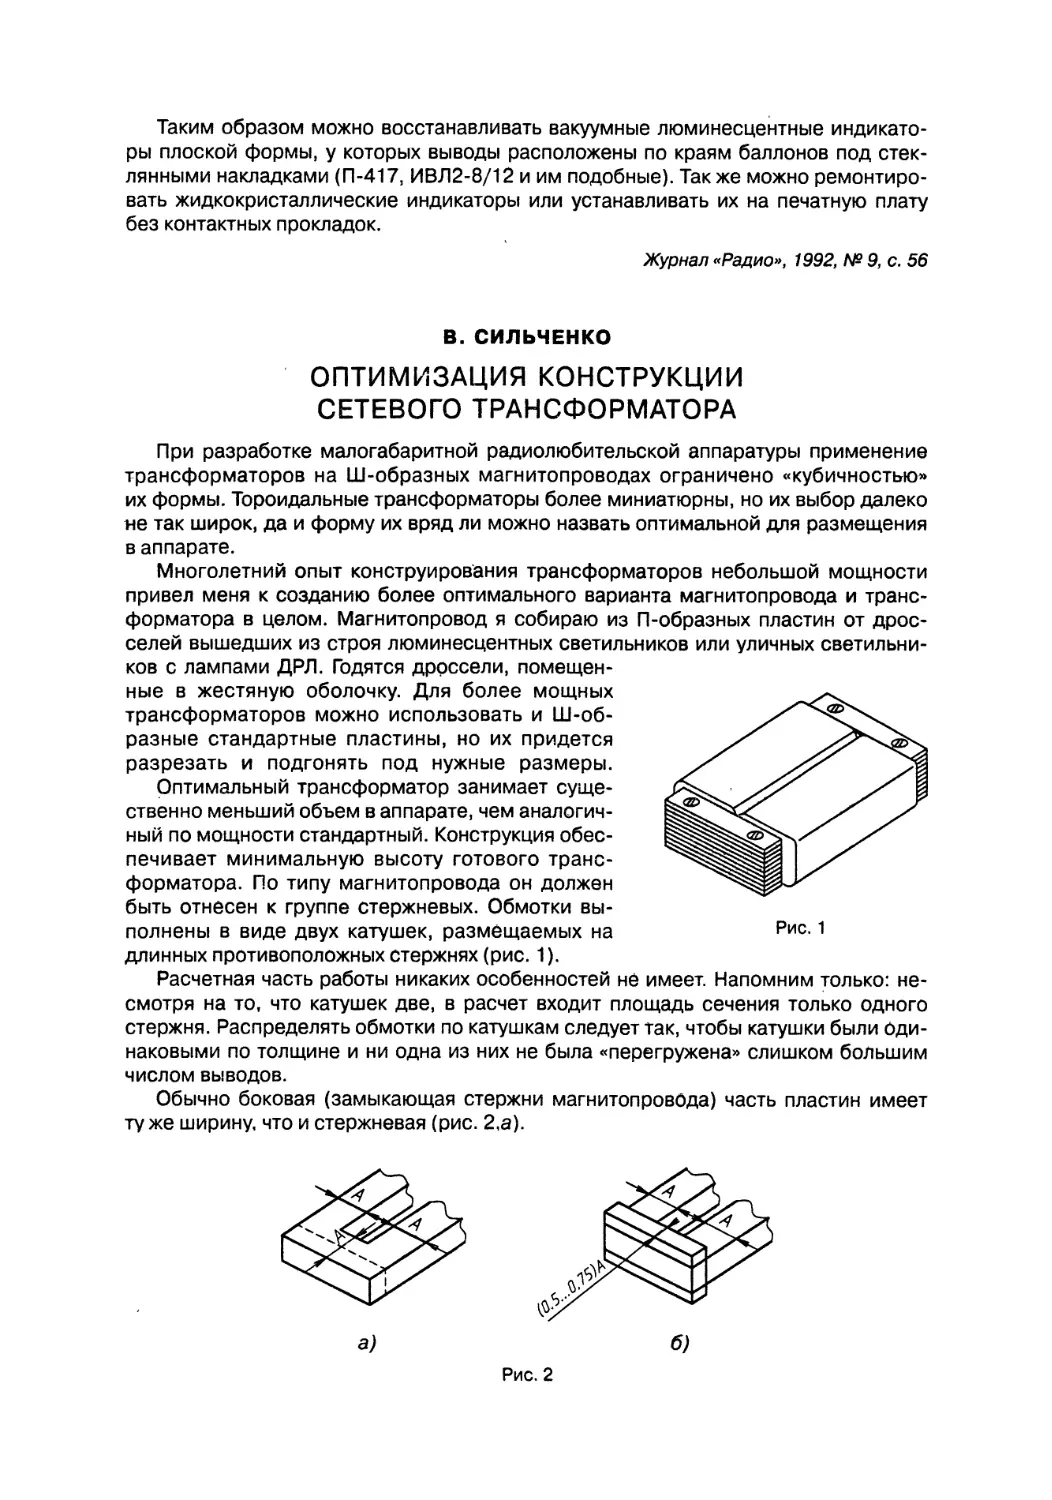 Оптимизация конструкции сетевого трансформатора